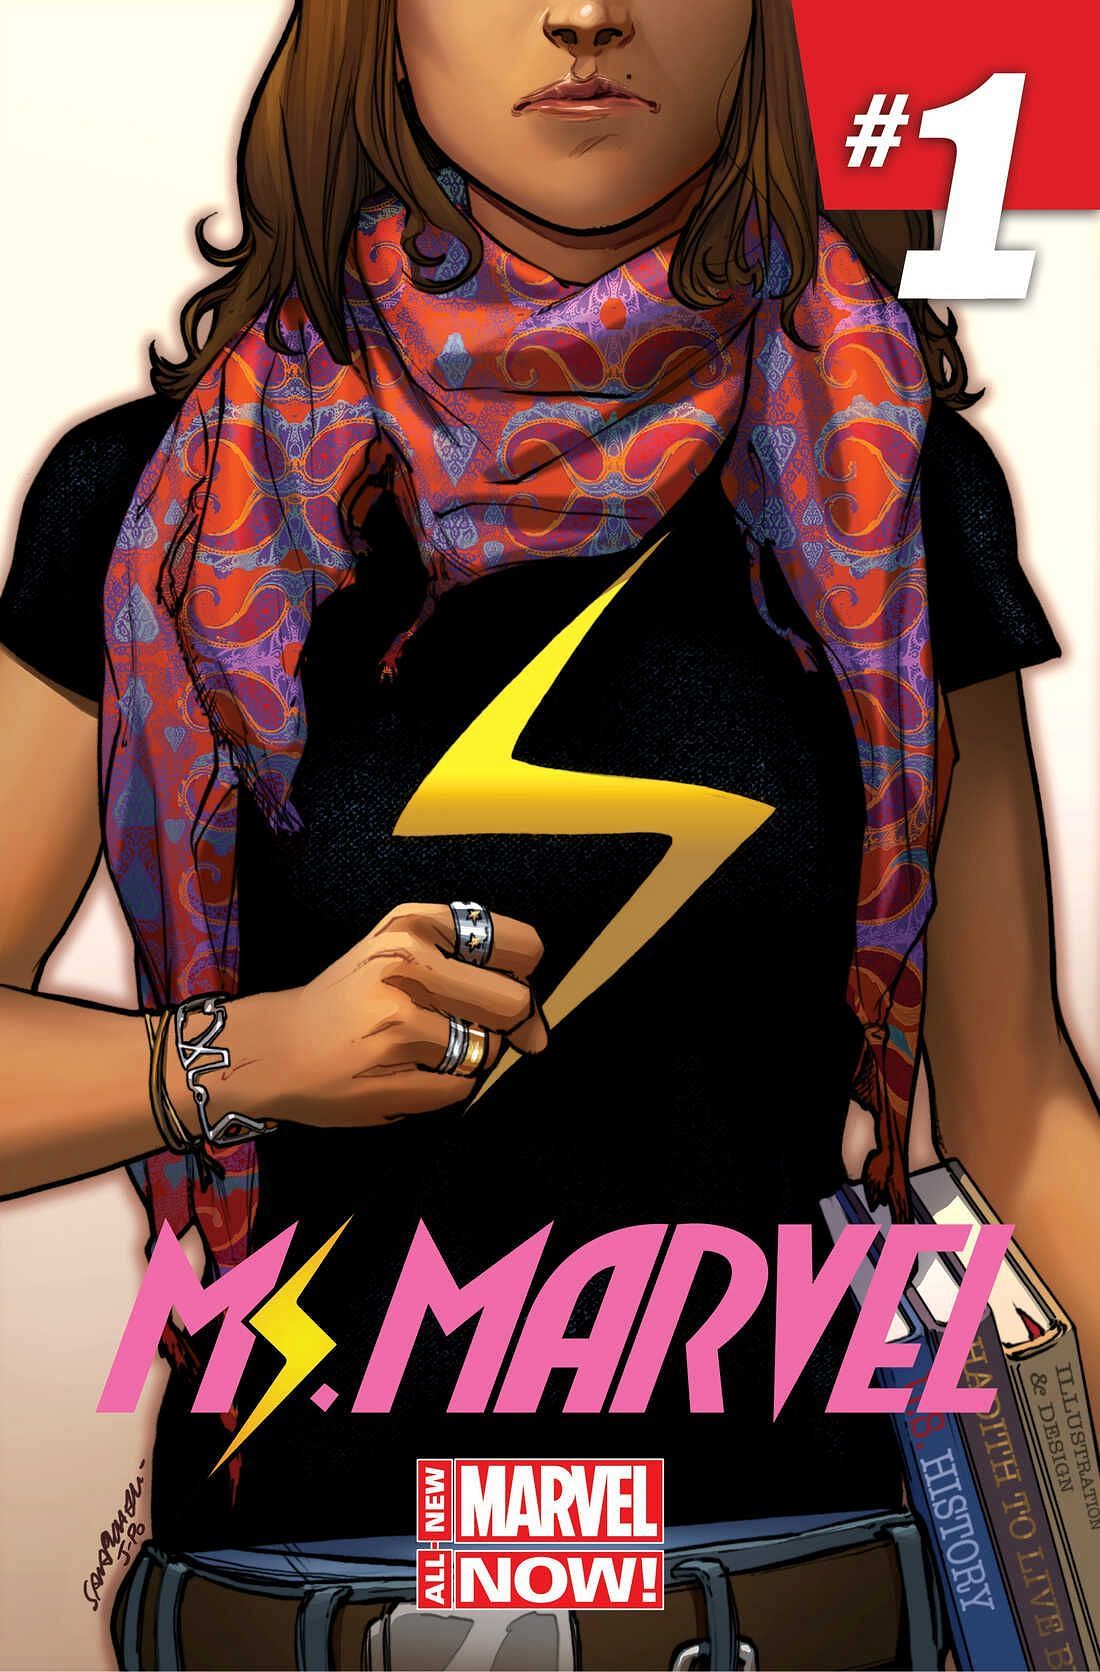 Ms. Marvel #1 (Image via Marvel Comics)